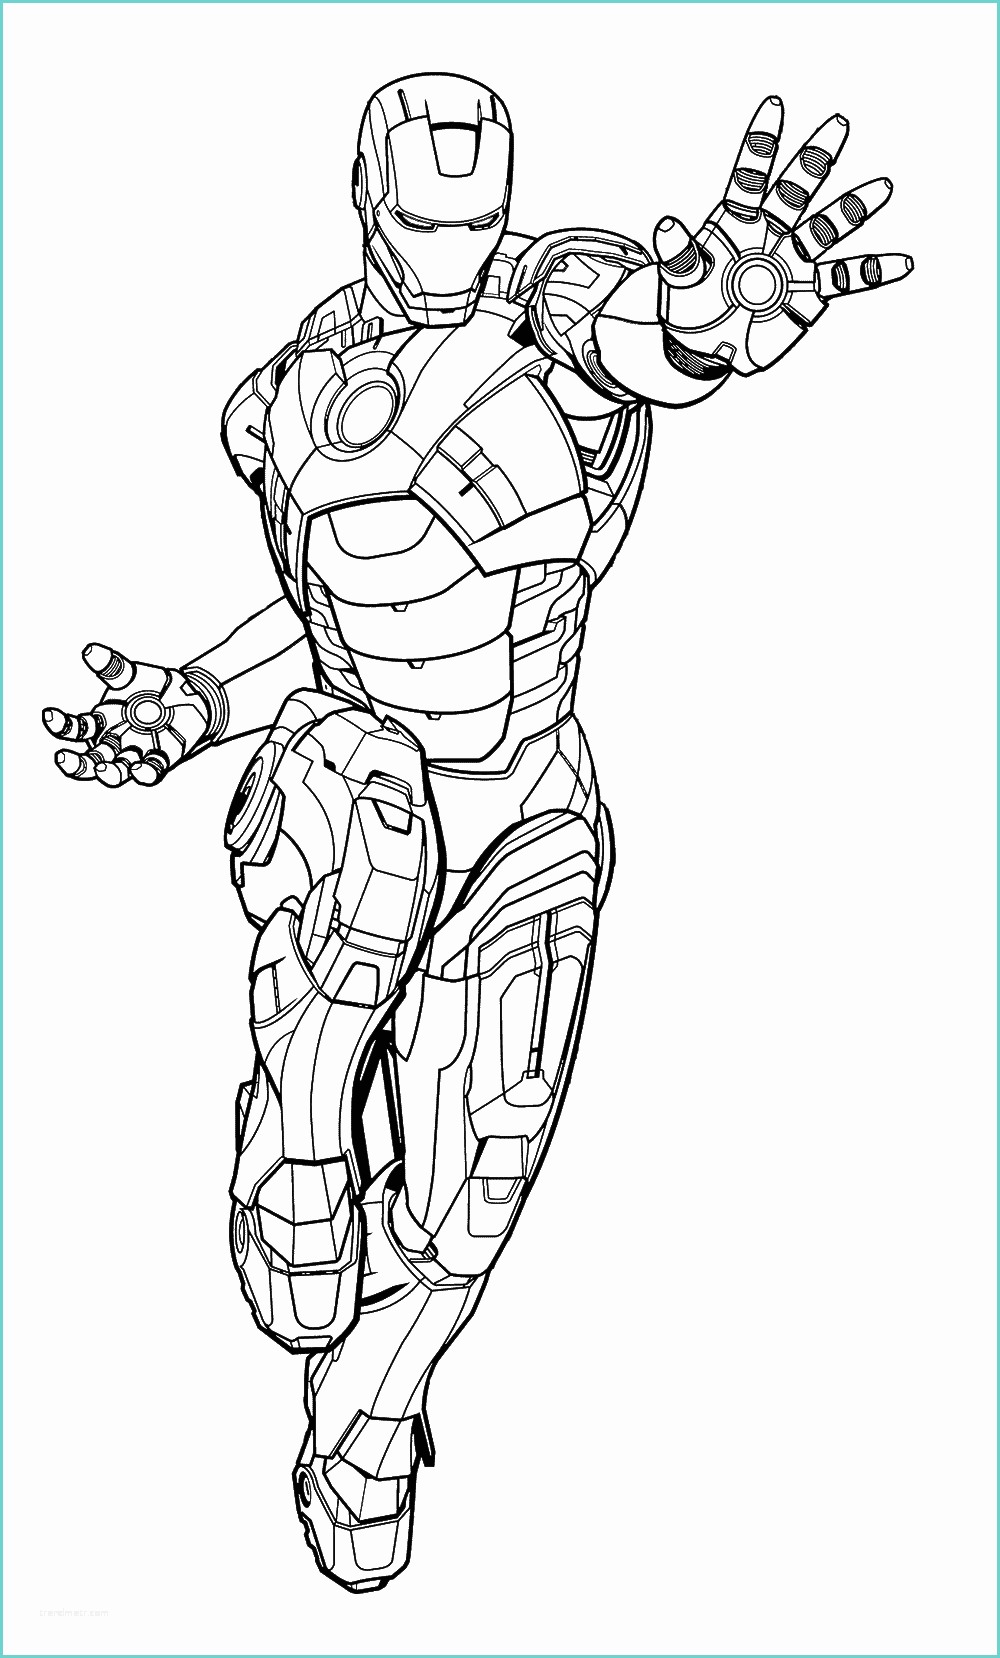 Immagini Di Spiderman Da Disegnare Iron Man Iron Man In Posa Da Battimento